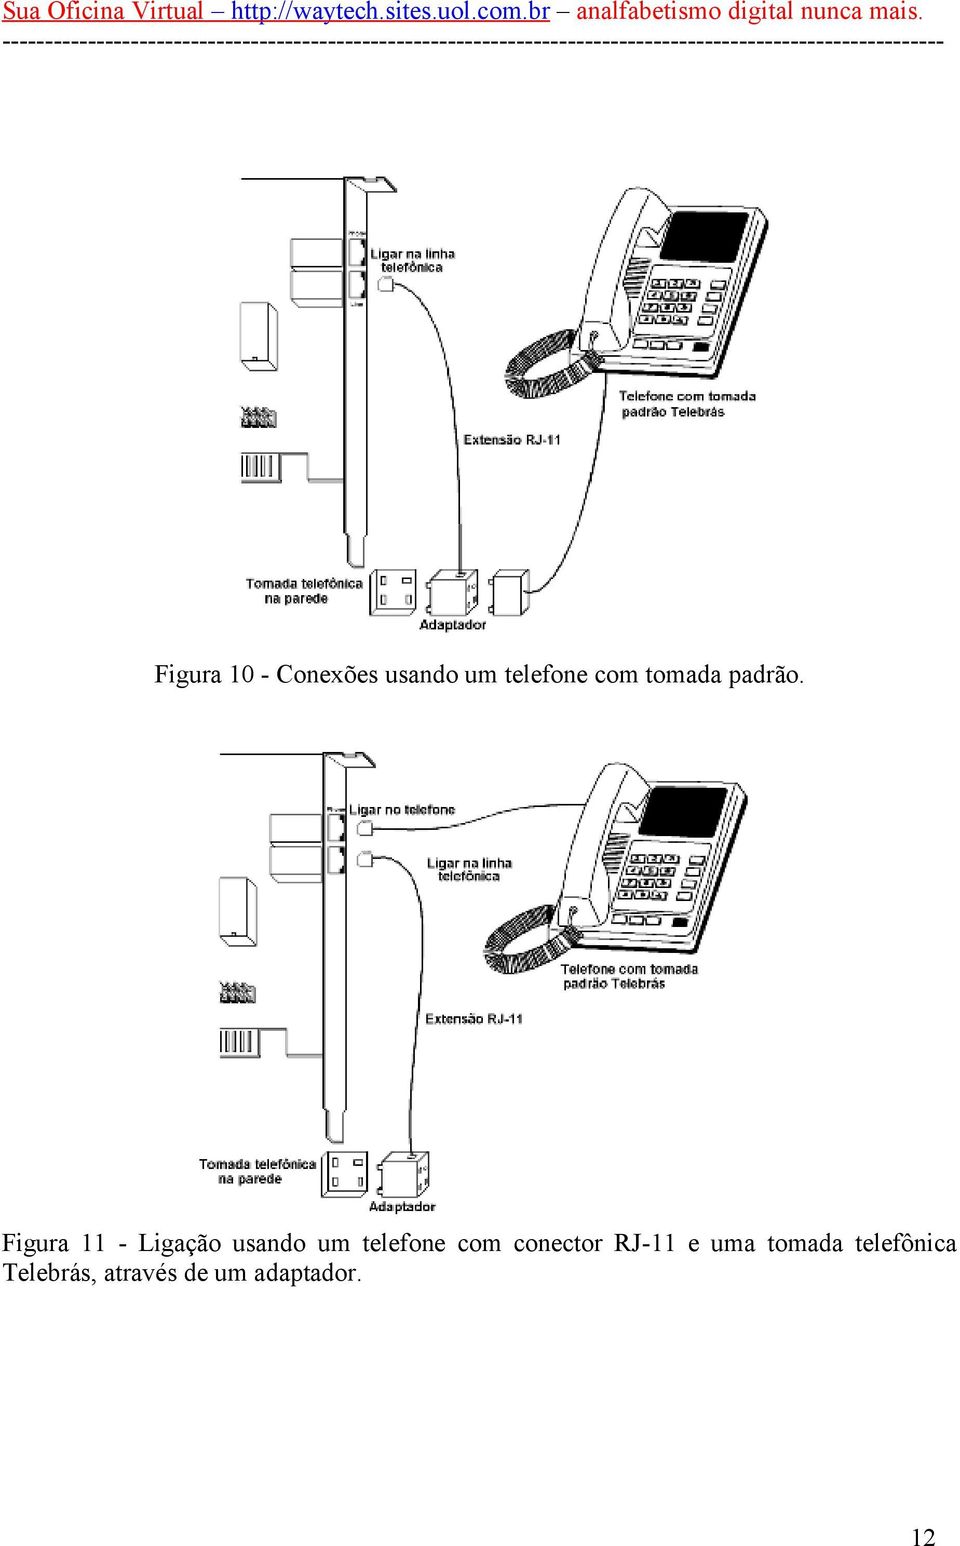 Figura 11 - Ligação usando um telefone com